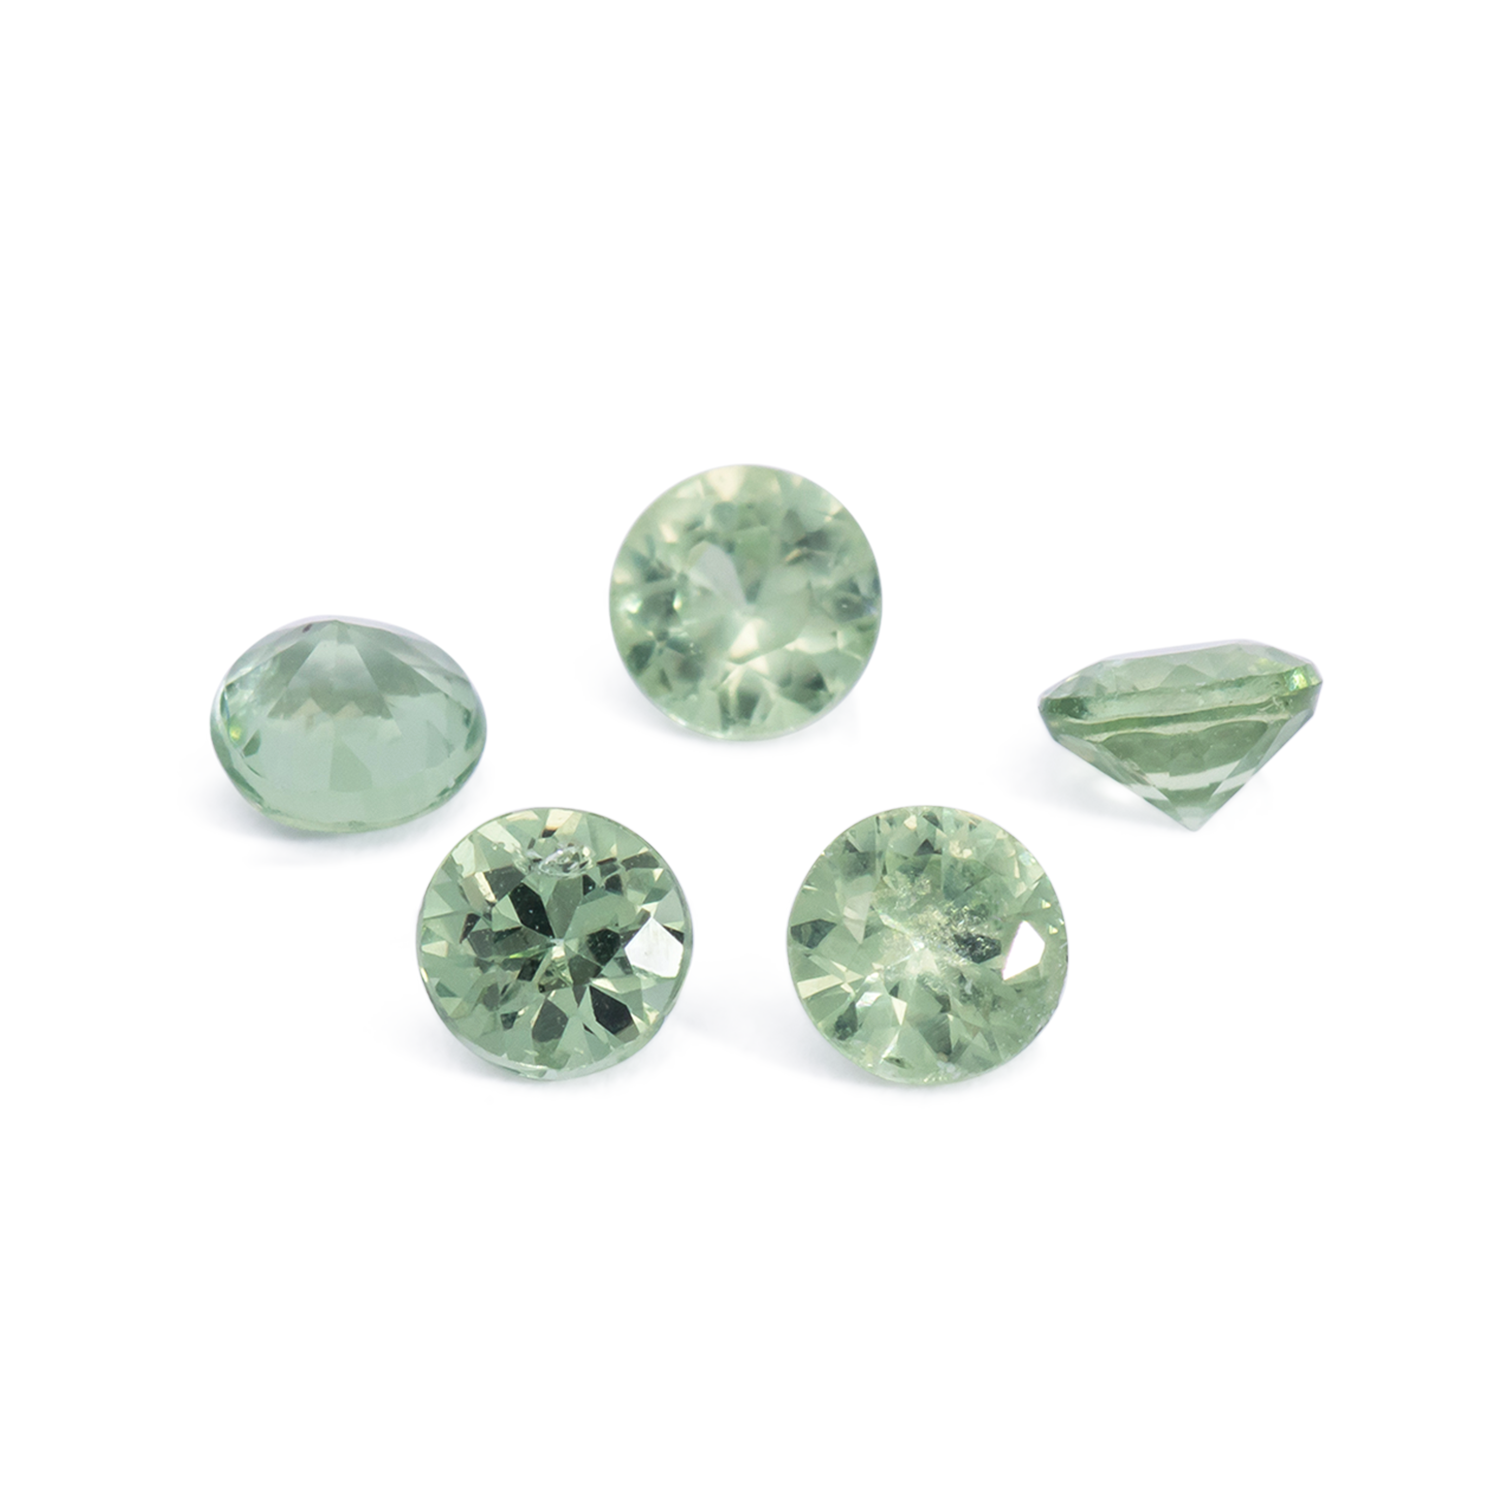 Saphir - grün, rund, 3x3 mm, 0.13 - 0.16 cts, Nr. XSR11258